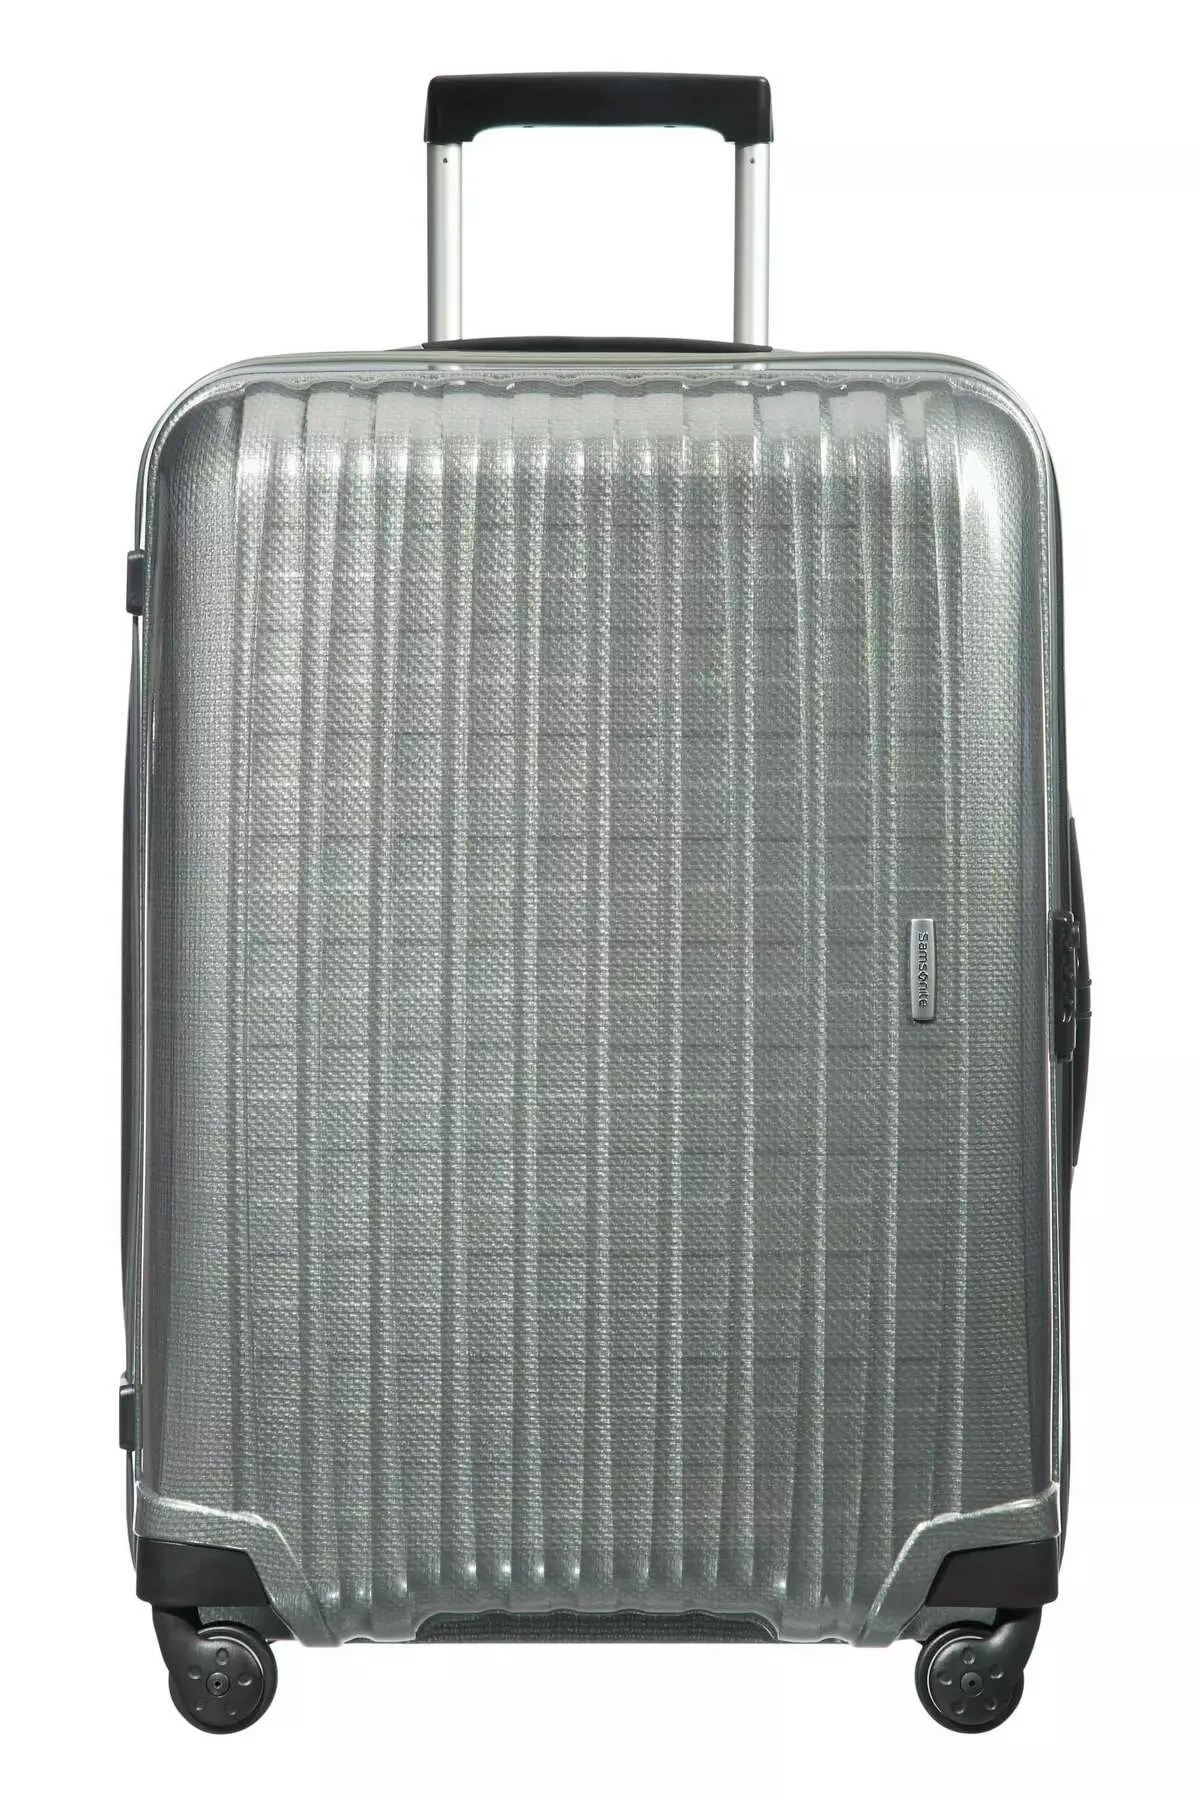 Samsonite чемоданы (57 сурет): балалардың чемодандары және қолмен салынған, сыдырмасы және 4 доңғалақты, басқа, өлшемдері және шолулары 13667_37